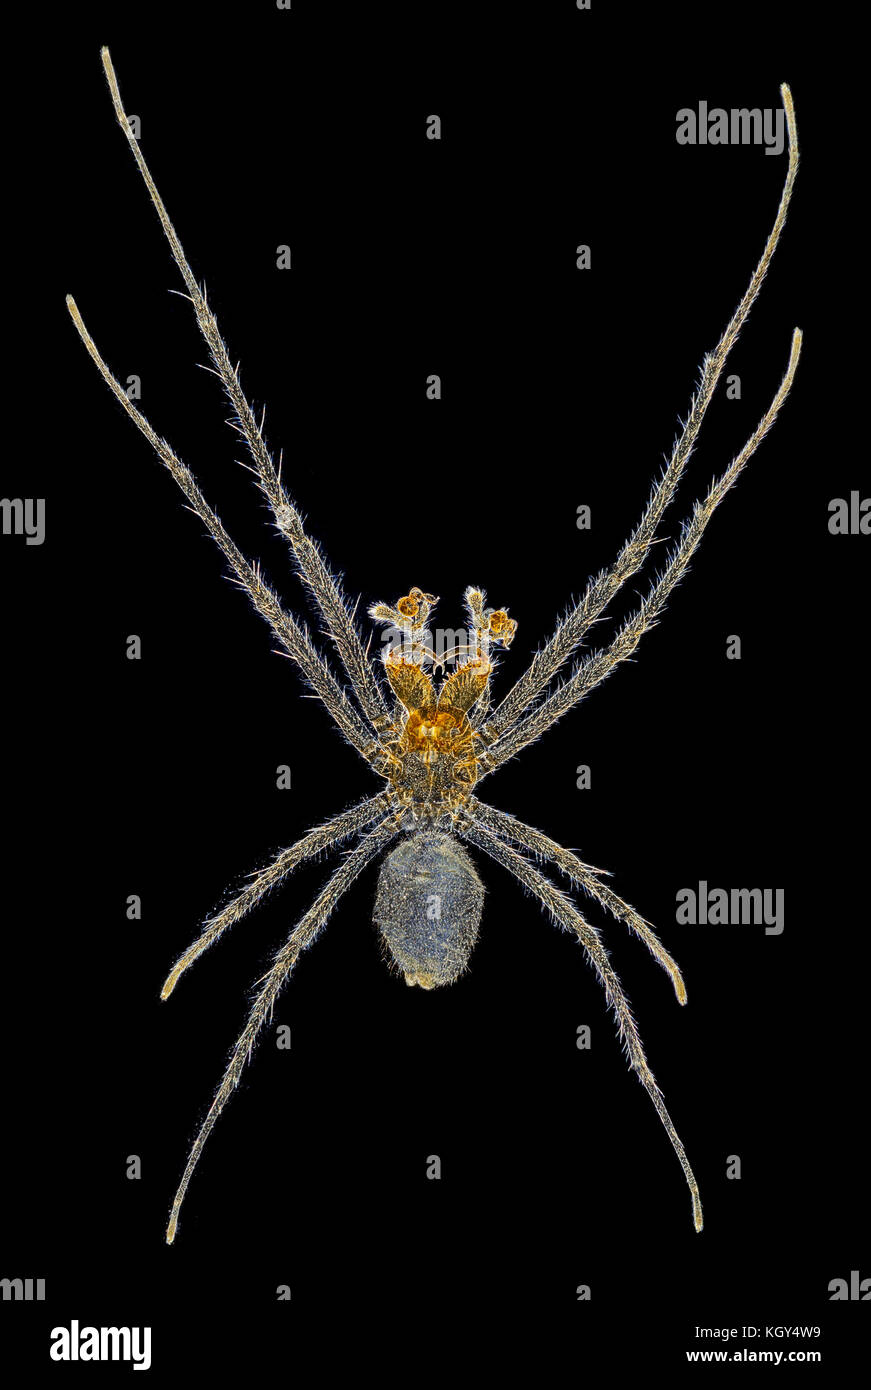 Spider, Tetragnatha sp. Photographie macro fond noir Banque D'Images